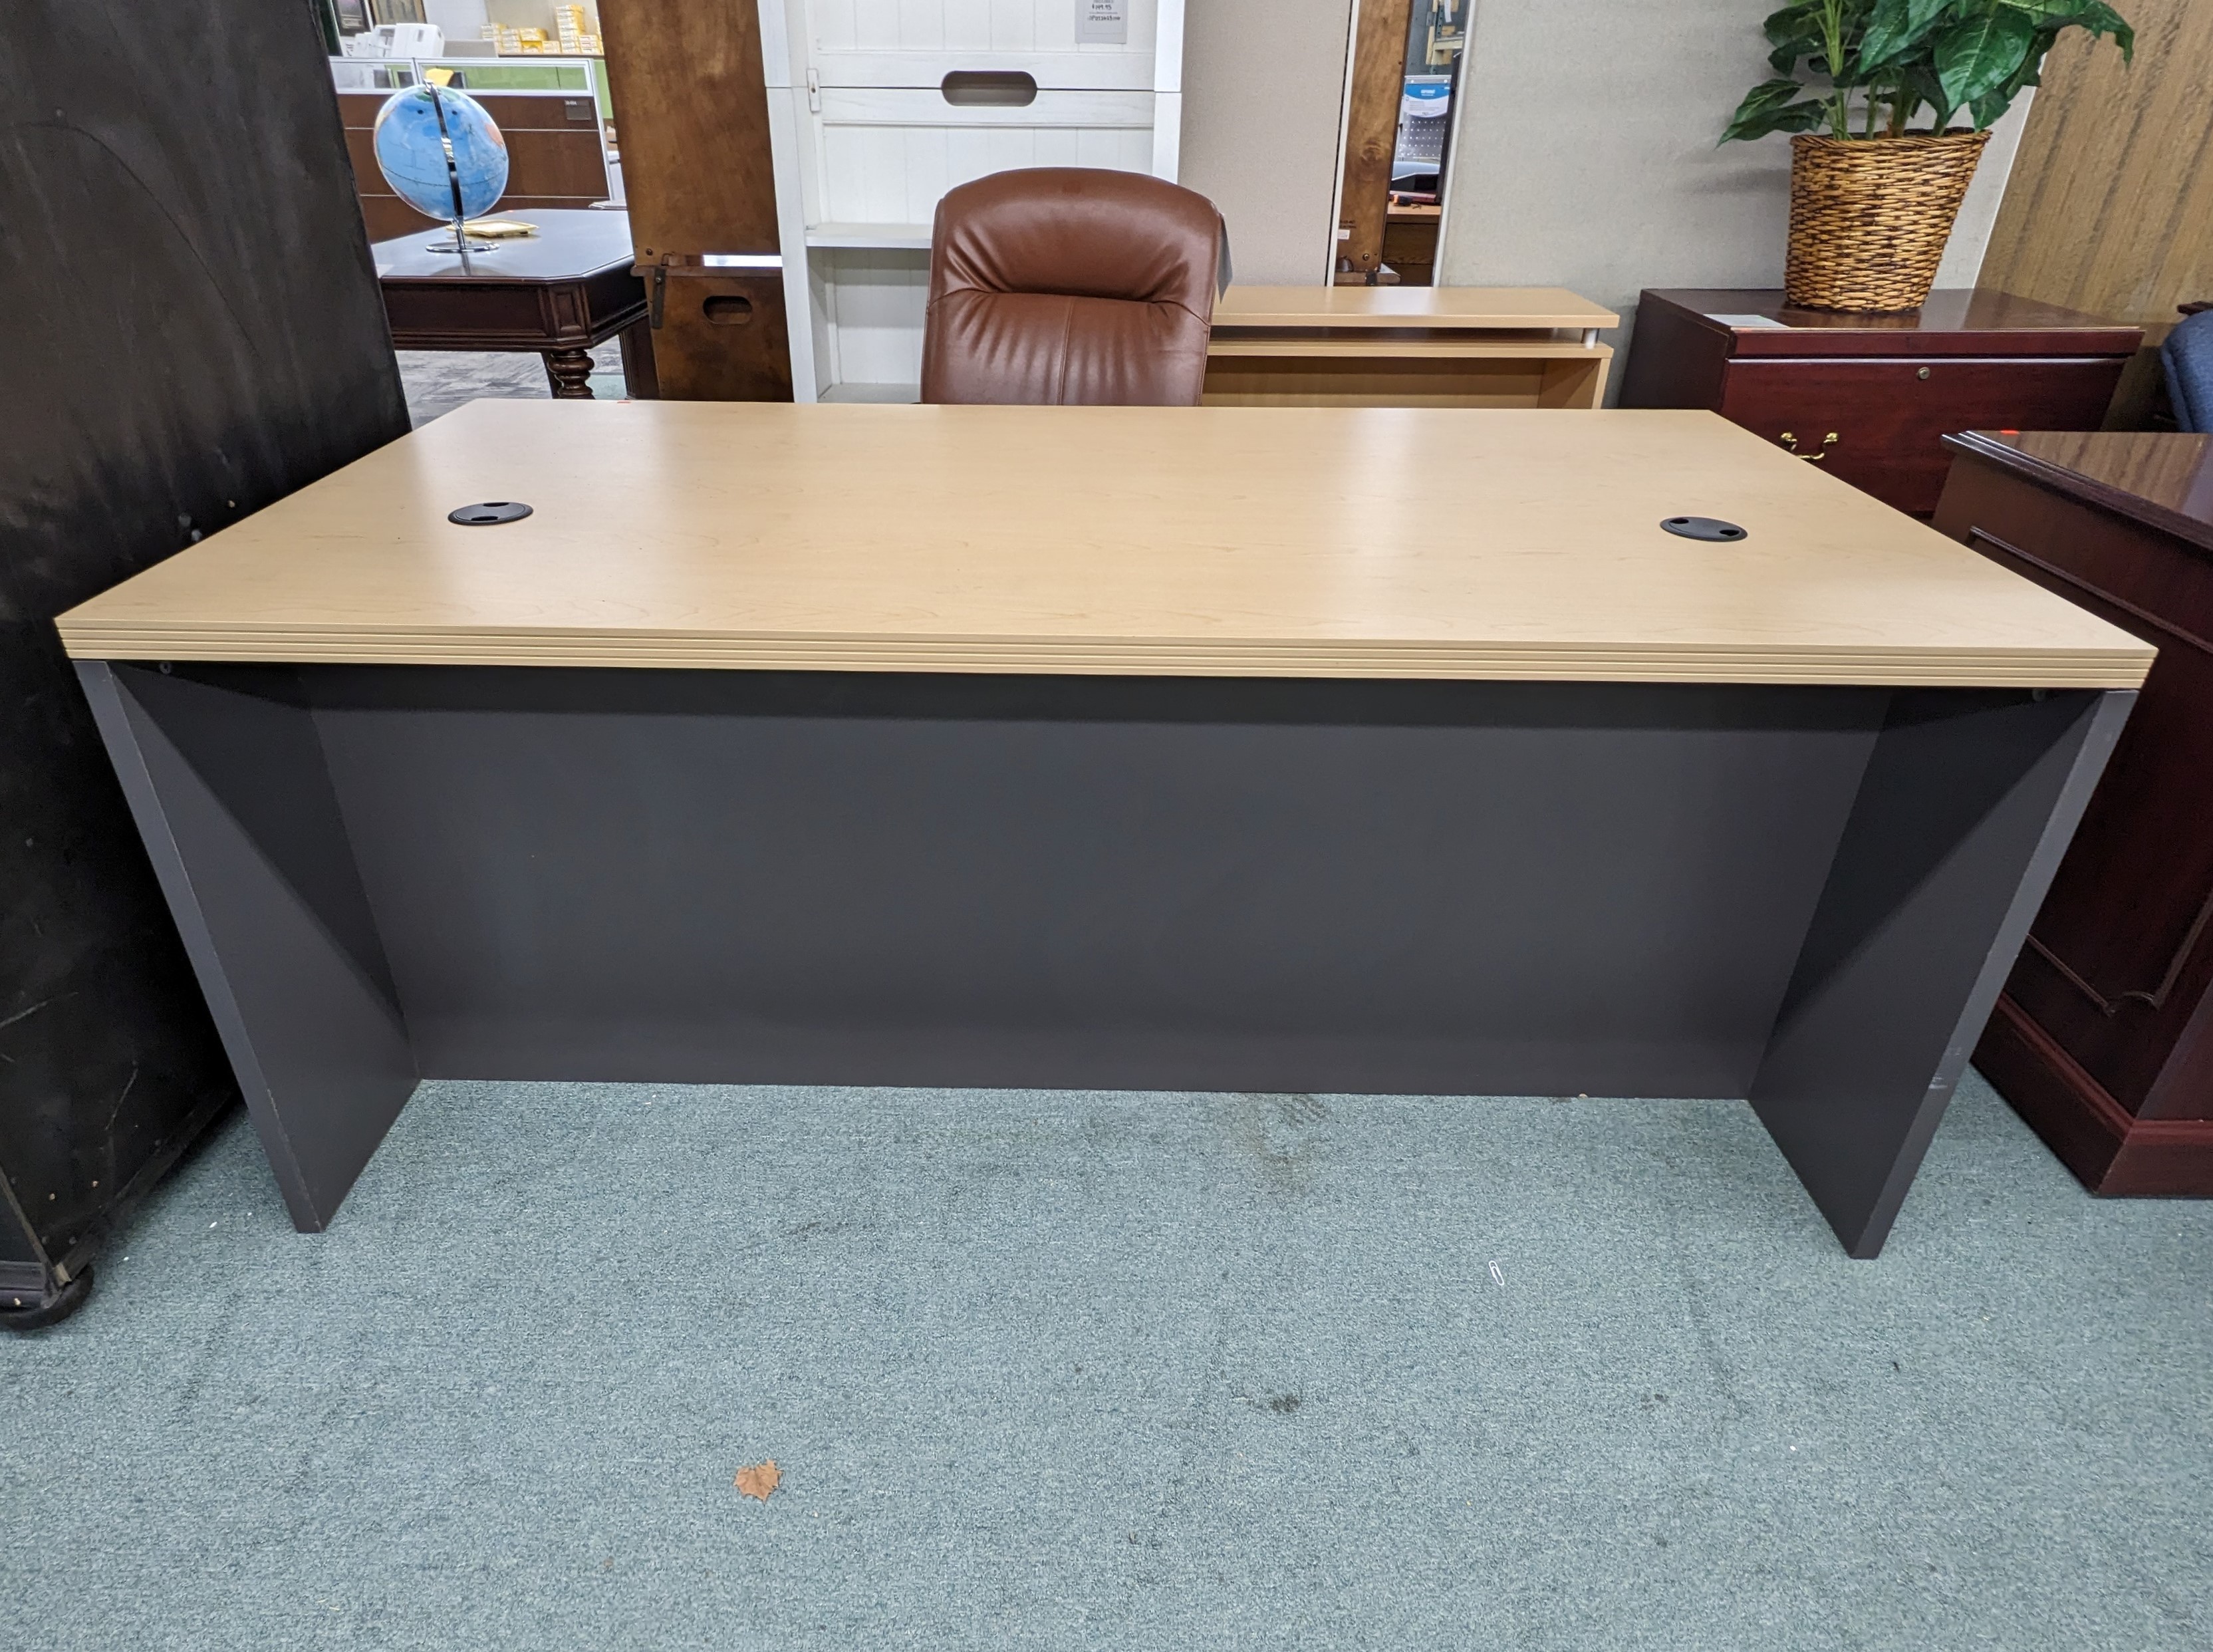 Used Executive Desk 